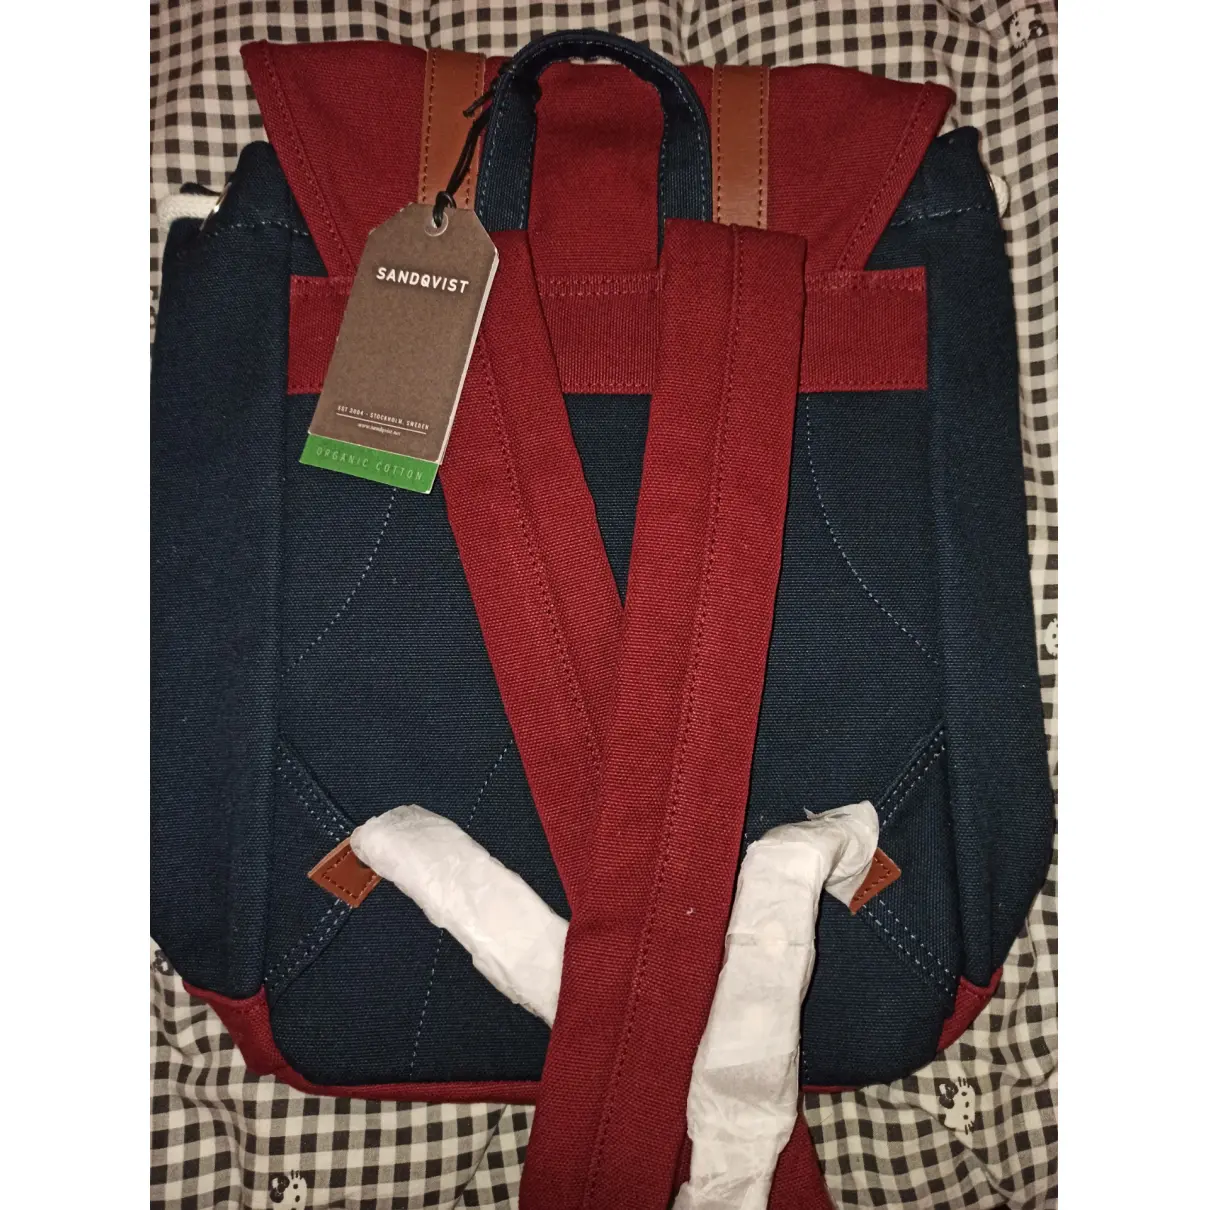 Buy Sandqvist Cloth backpack online